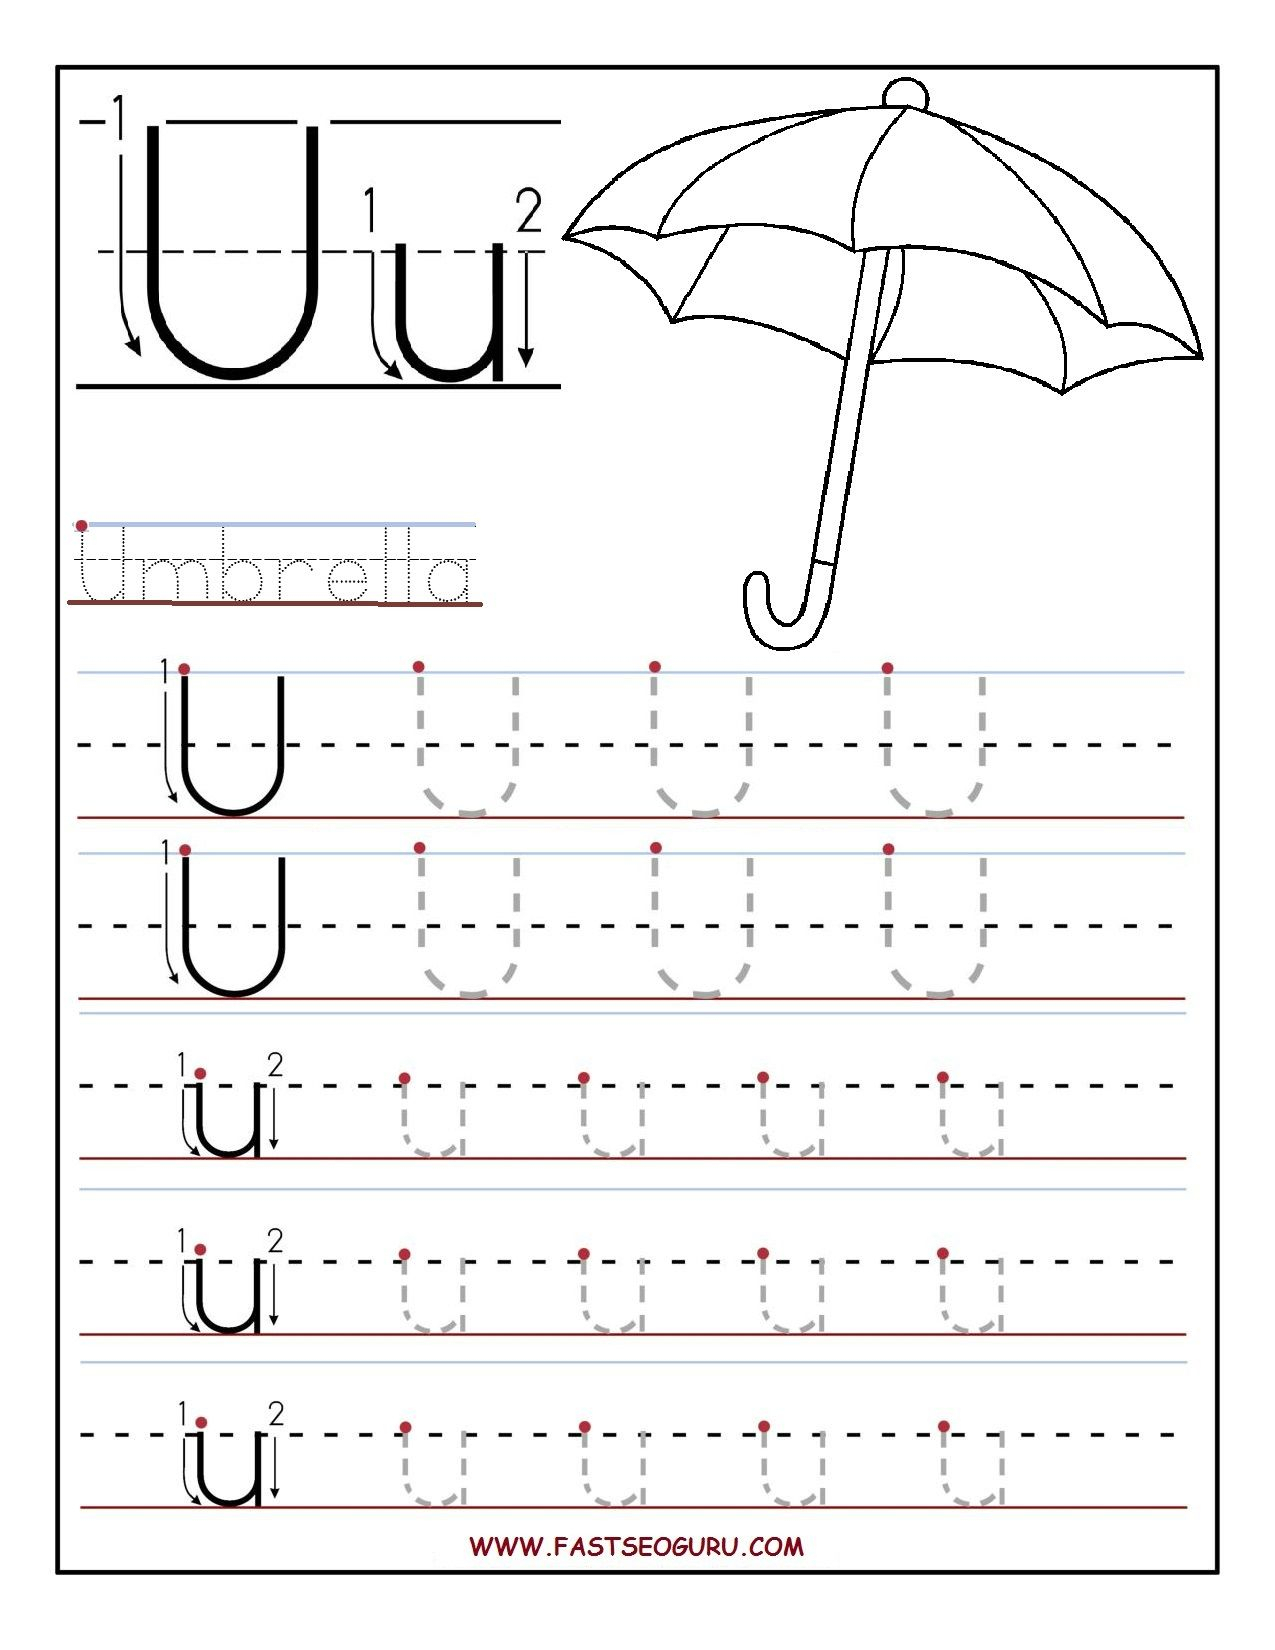 Printable Letter U Tracing Worksheets For Preschool intended for Pre-K Tracing Letters Worksheets